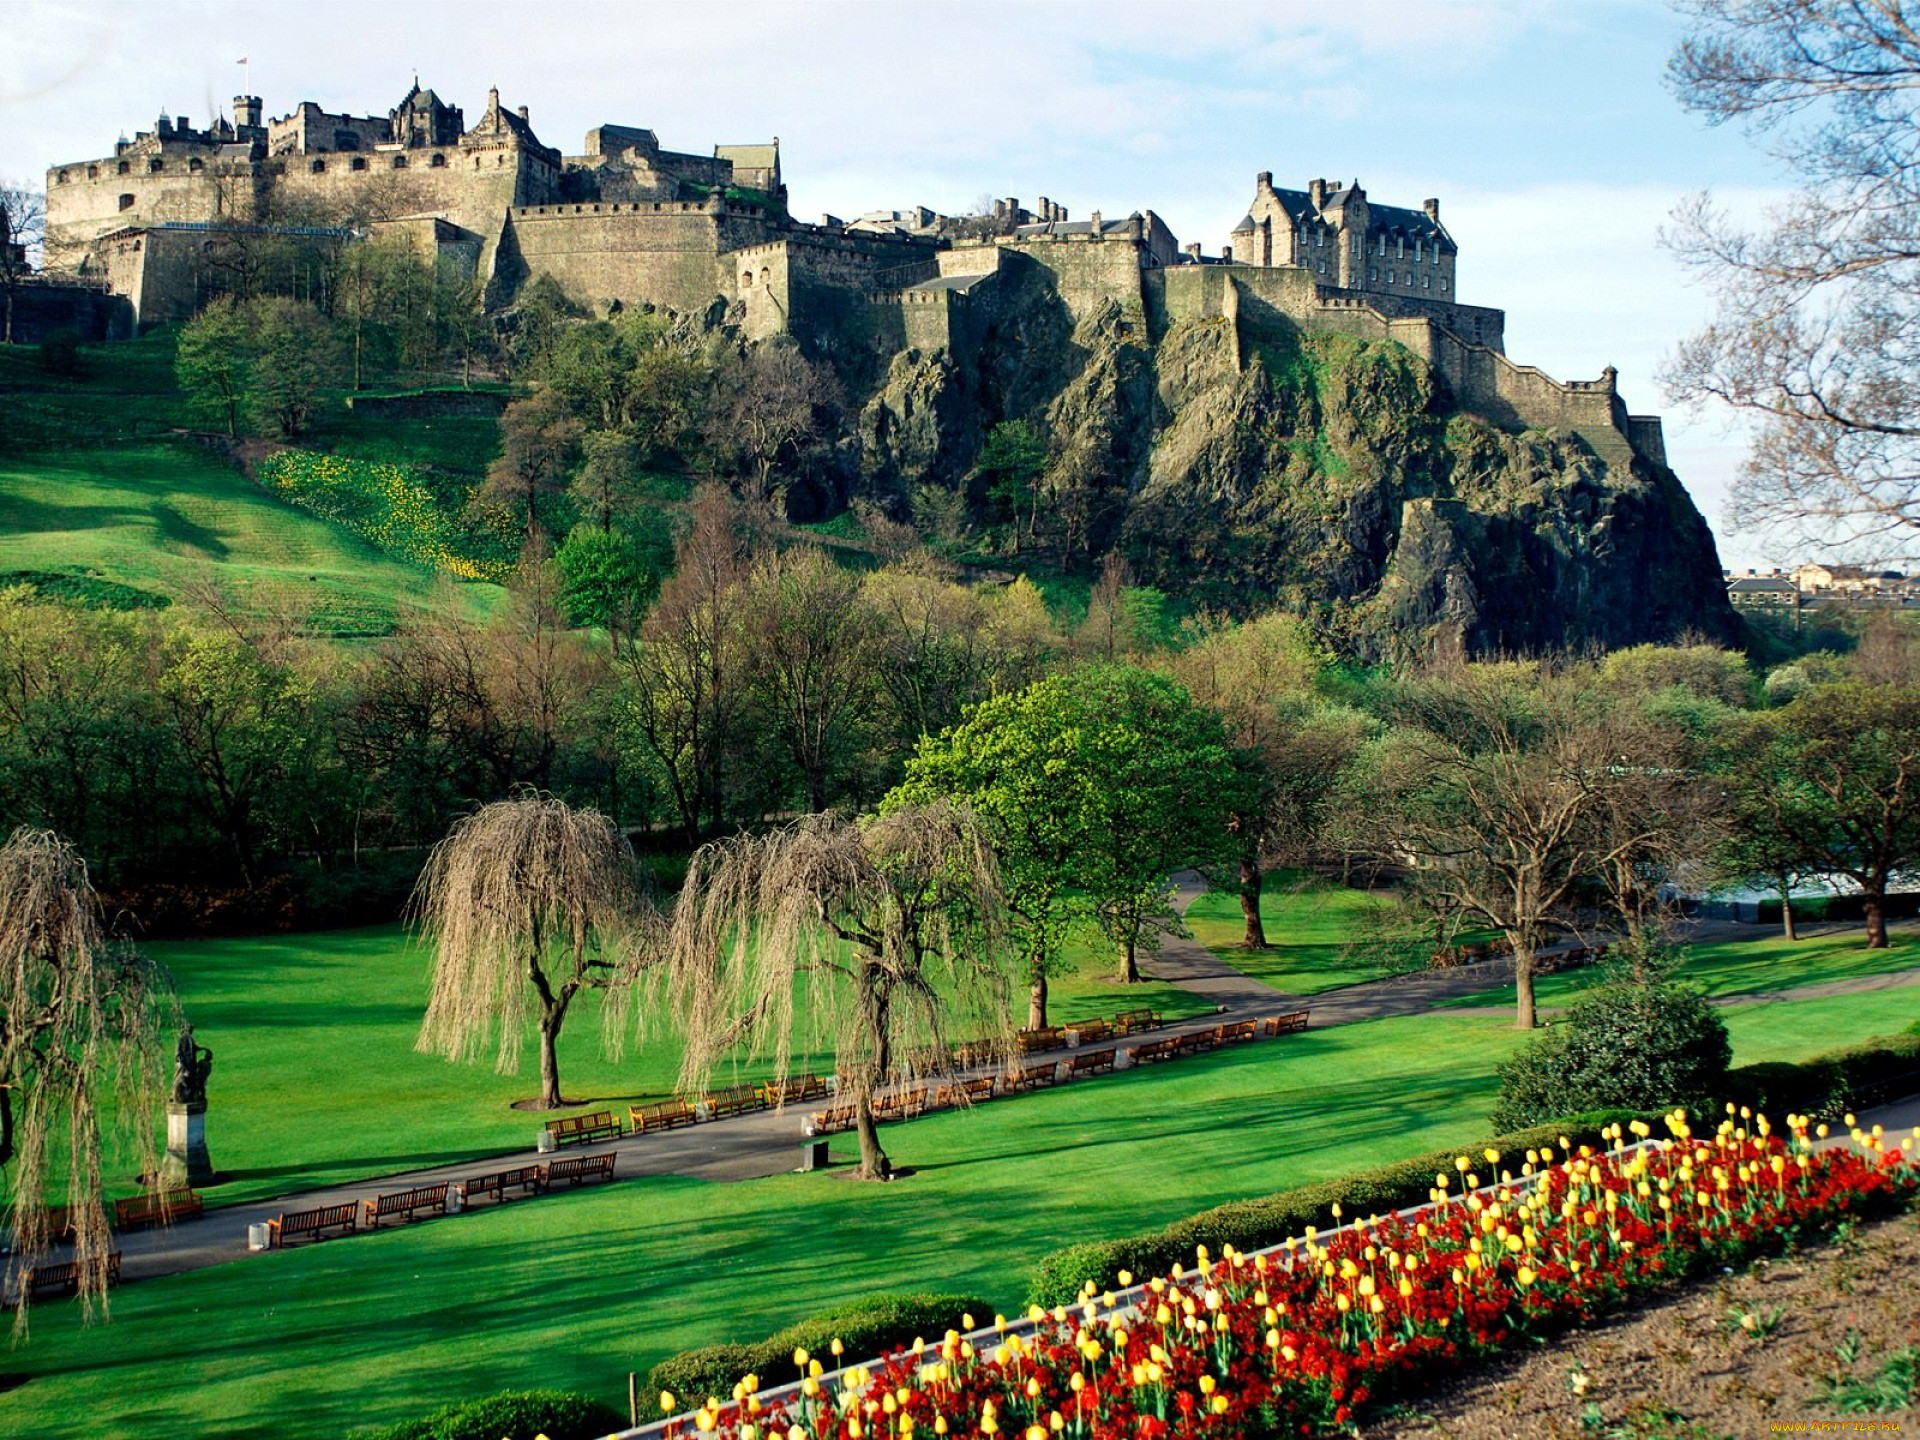 Шотландия. Эдинбургский замок Шотландия. Замок Эдинбург в Шотландии. 4. Эдинбургский замок (Эдинбург, Шотландия). Шотландия достопримечательности Эдинбургский замок.